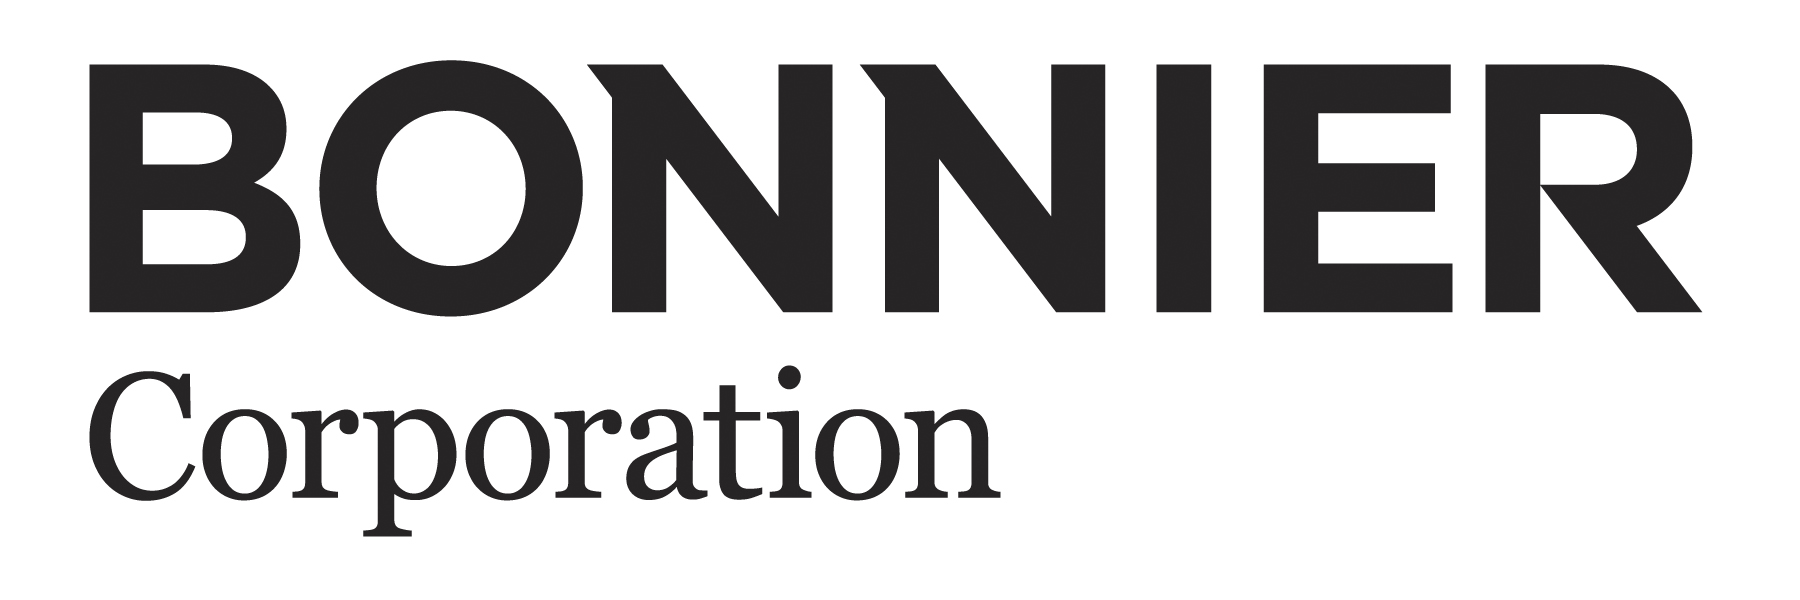 Bonnier-Corp-hi-res-logo.jpg